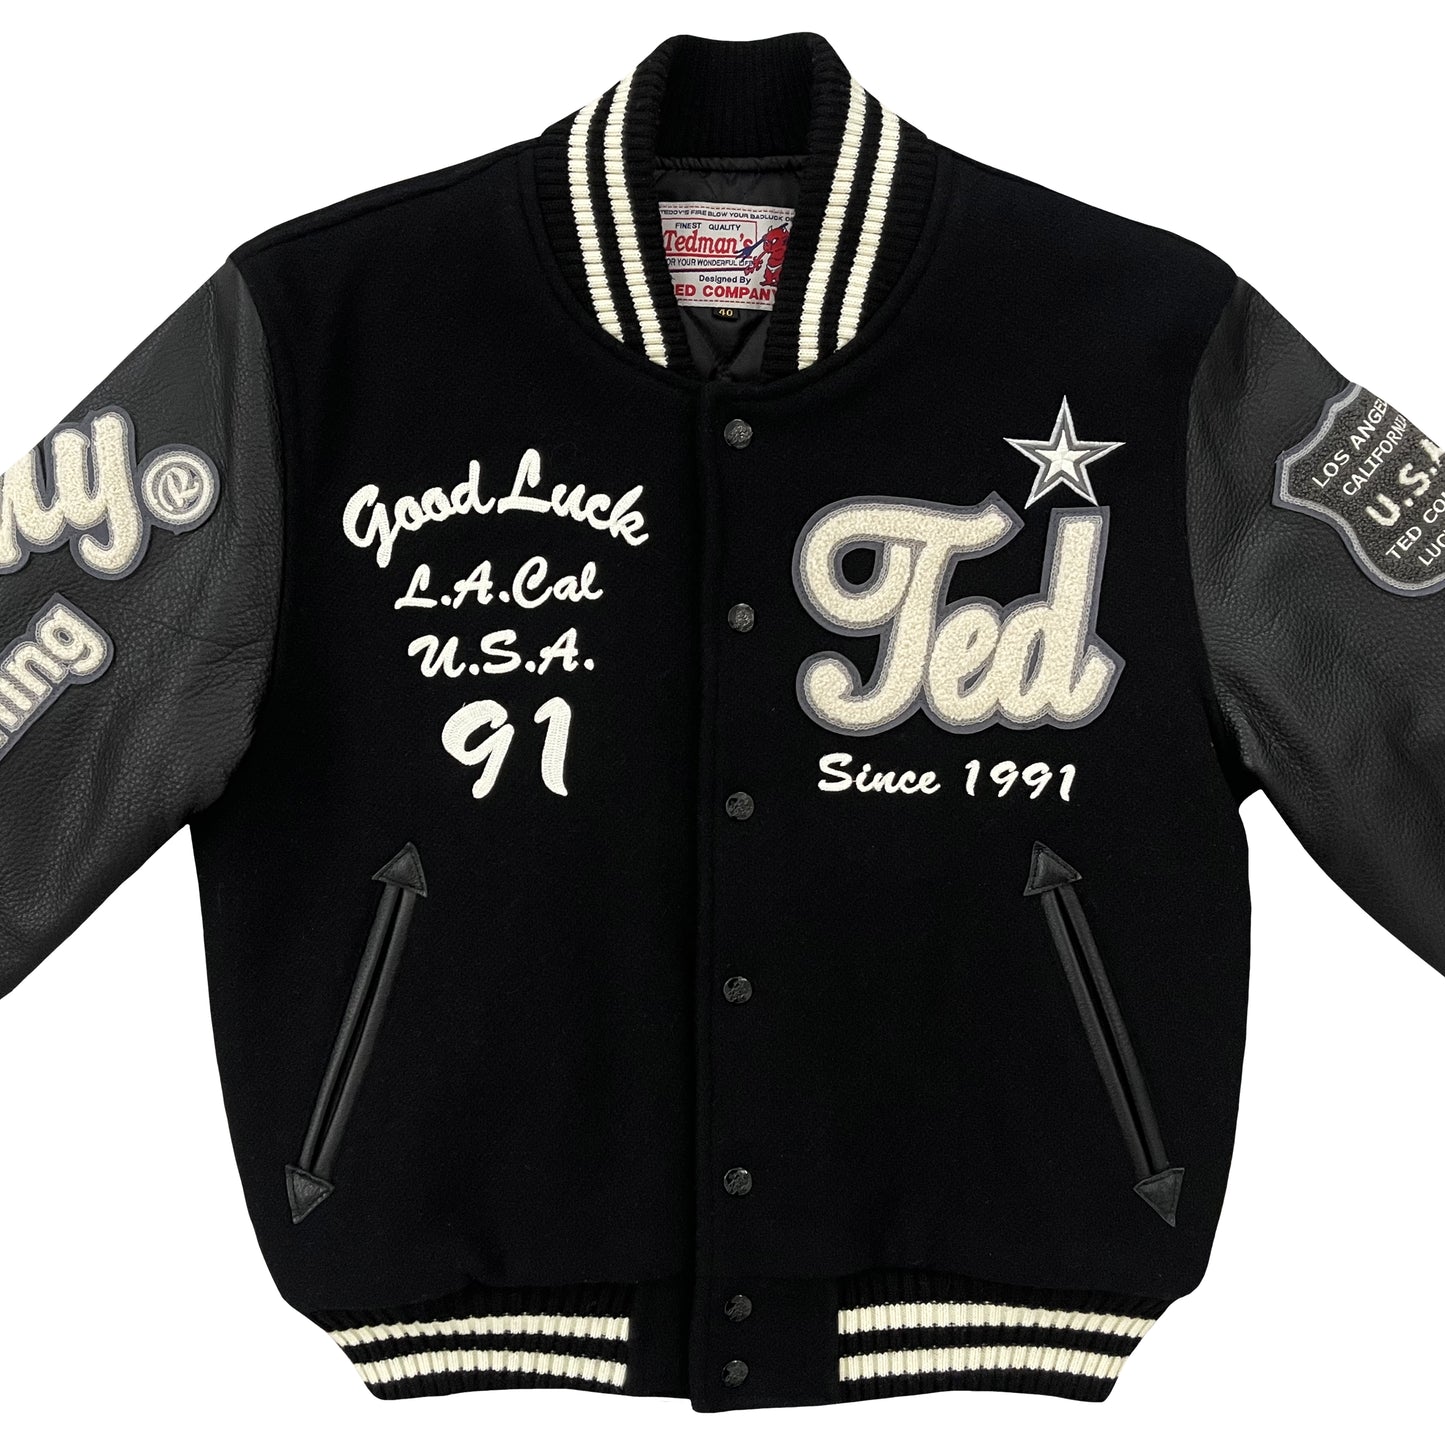 Tedman's Varsity Jacket